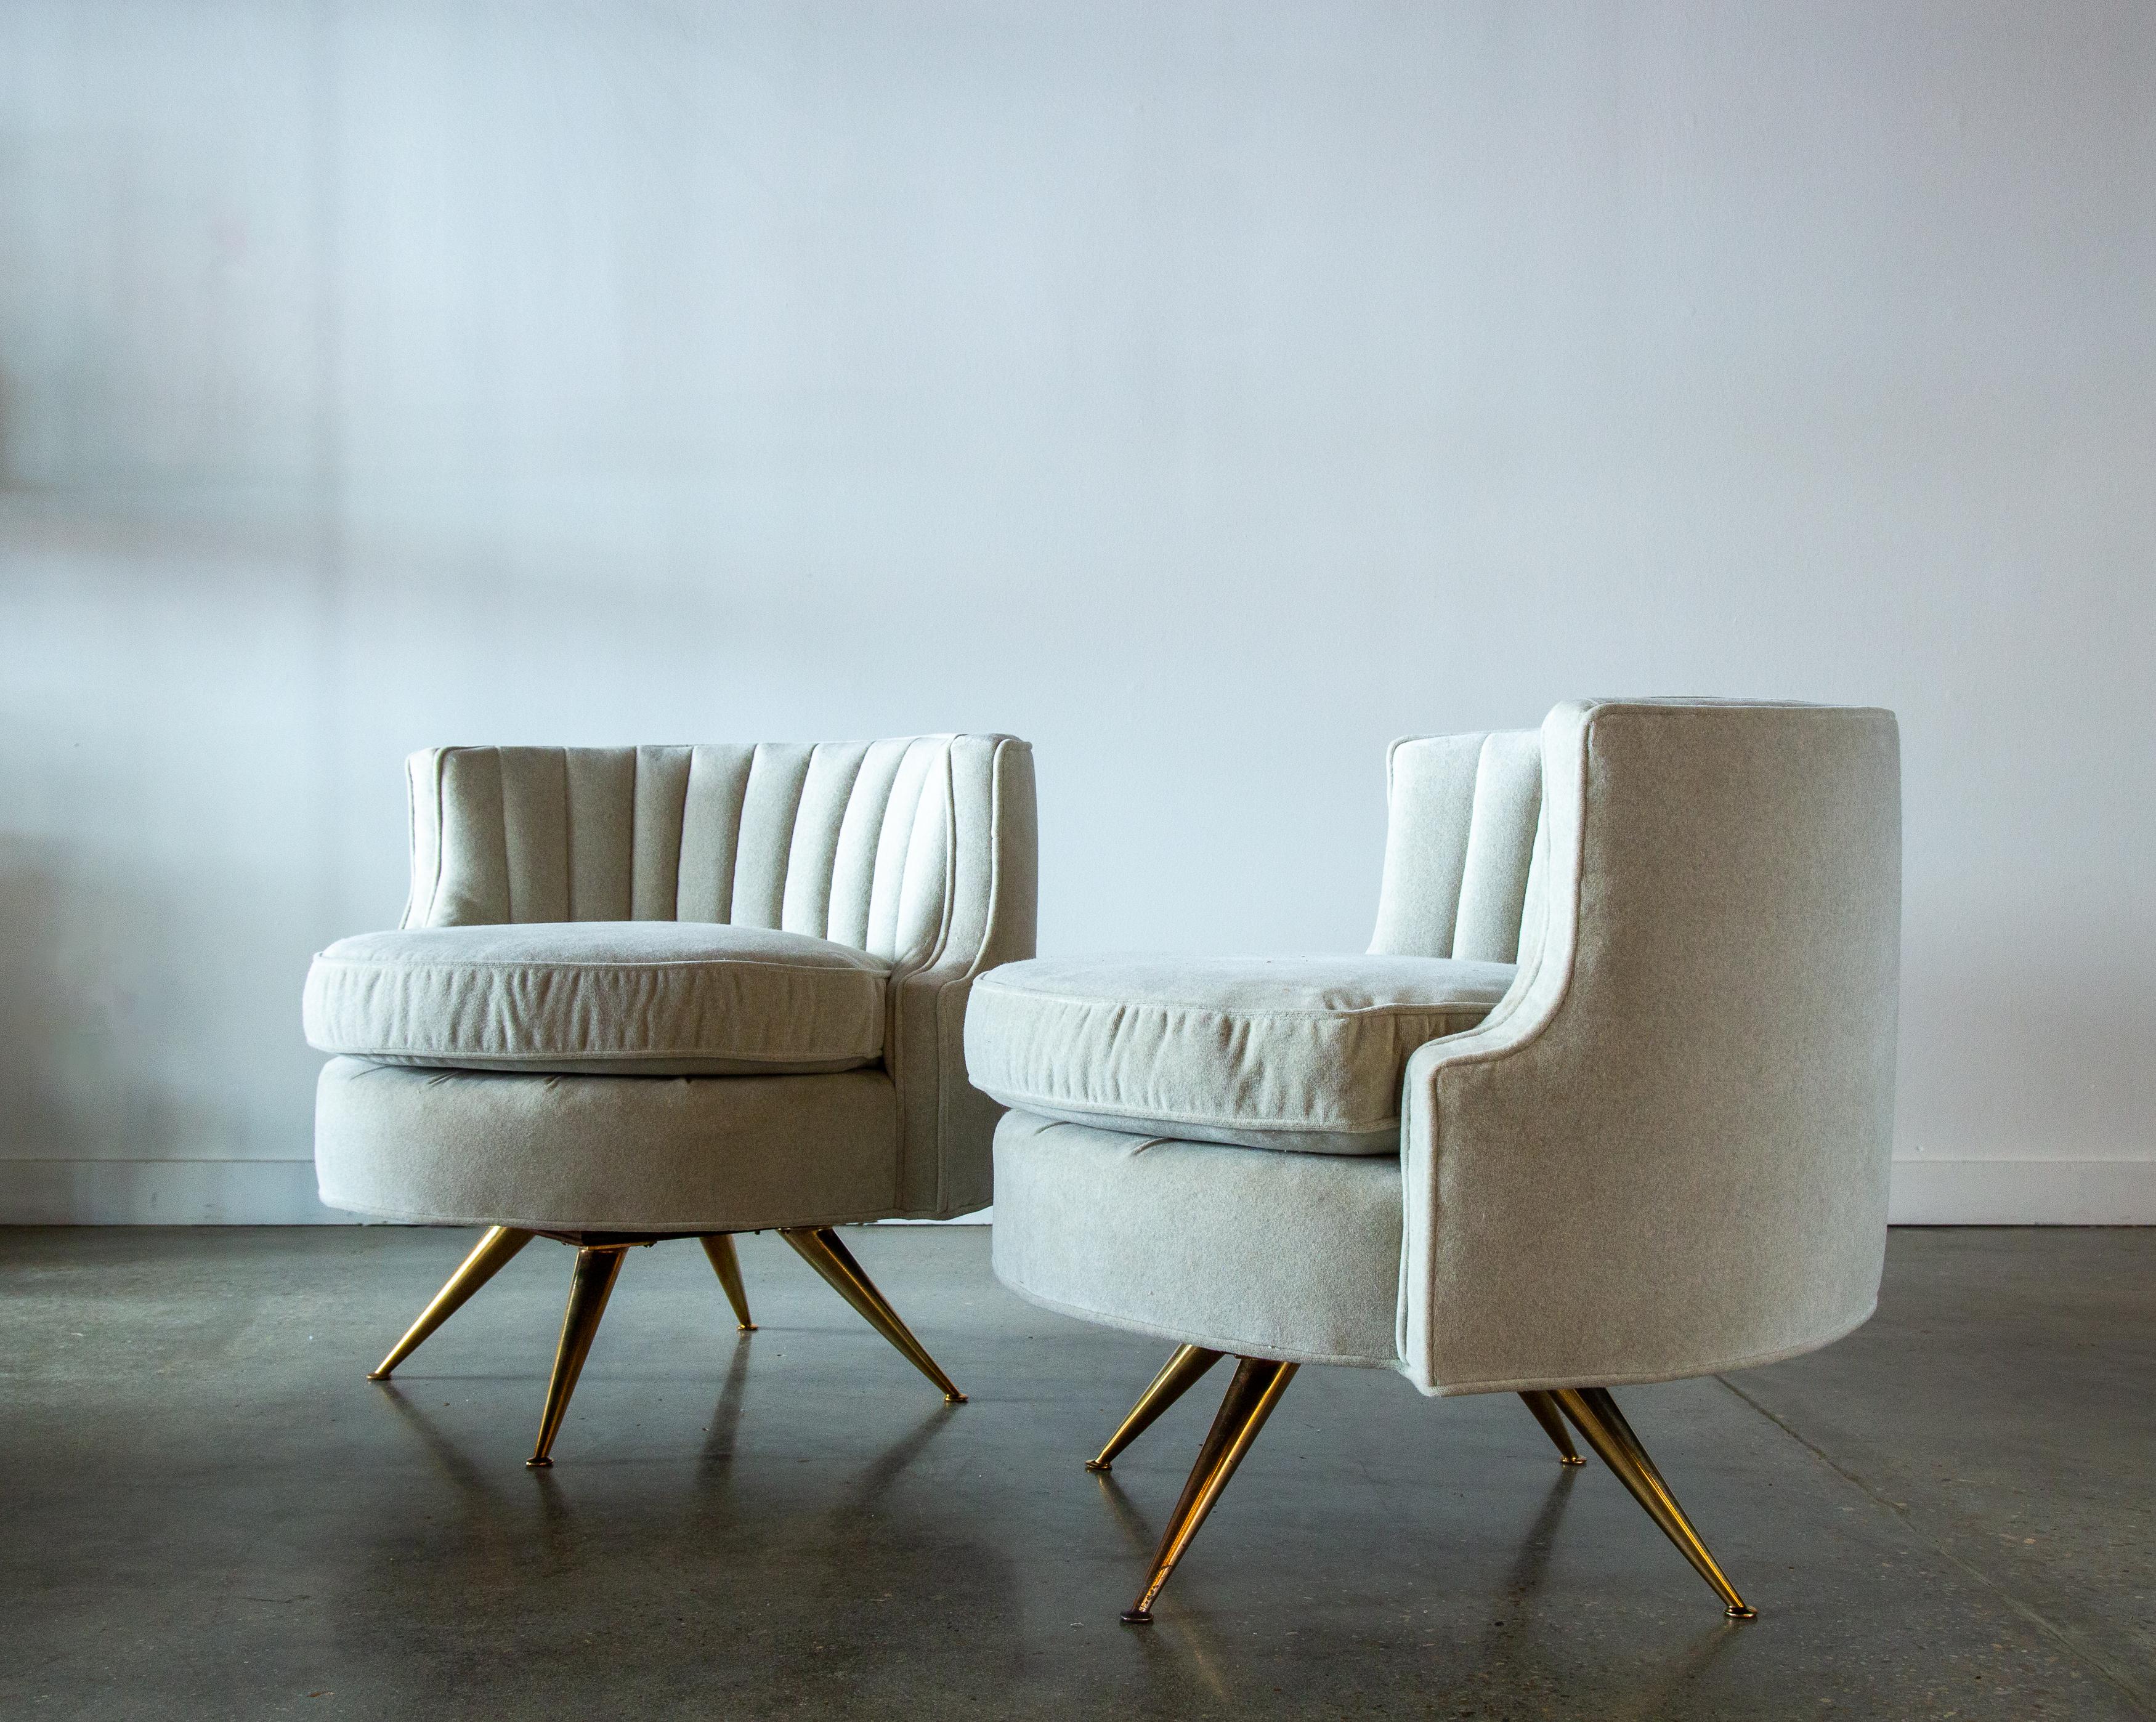 Ein Paar Drehstühle mit Tonnenrücken aus den 1950er Jahren, entworfen von Henry P. Glass für JG Furniture. Diese Stühle zeichnen sich durch eine schöne, tonnenförmige Rückenlehne aus, die mit Kanaltufting akzentuiert ist. Die ebene Rückenlehne fällt